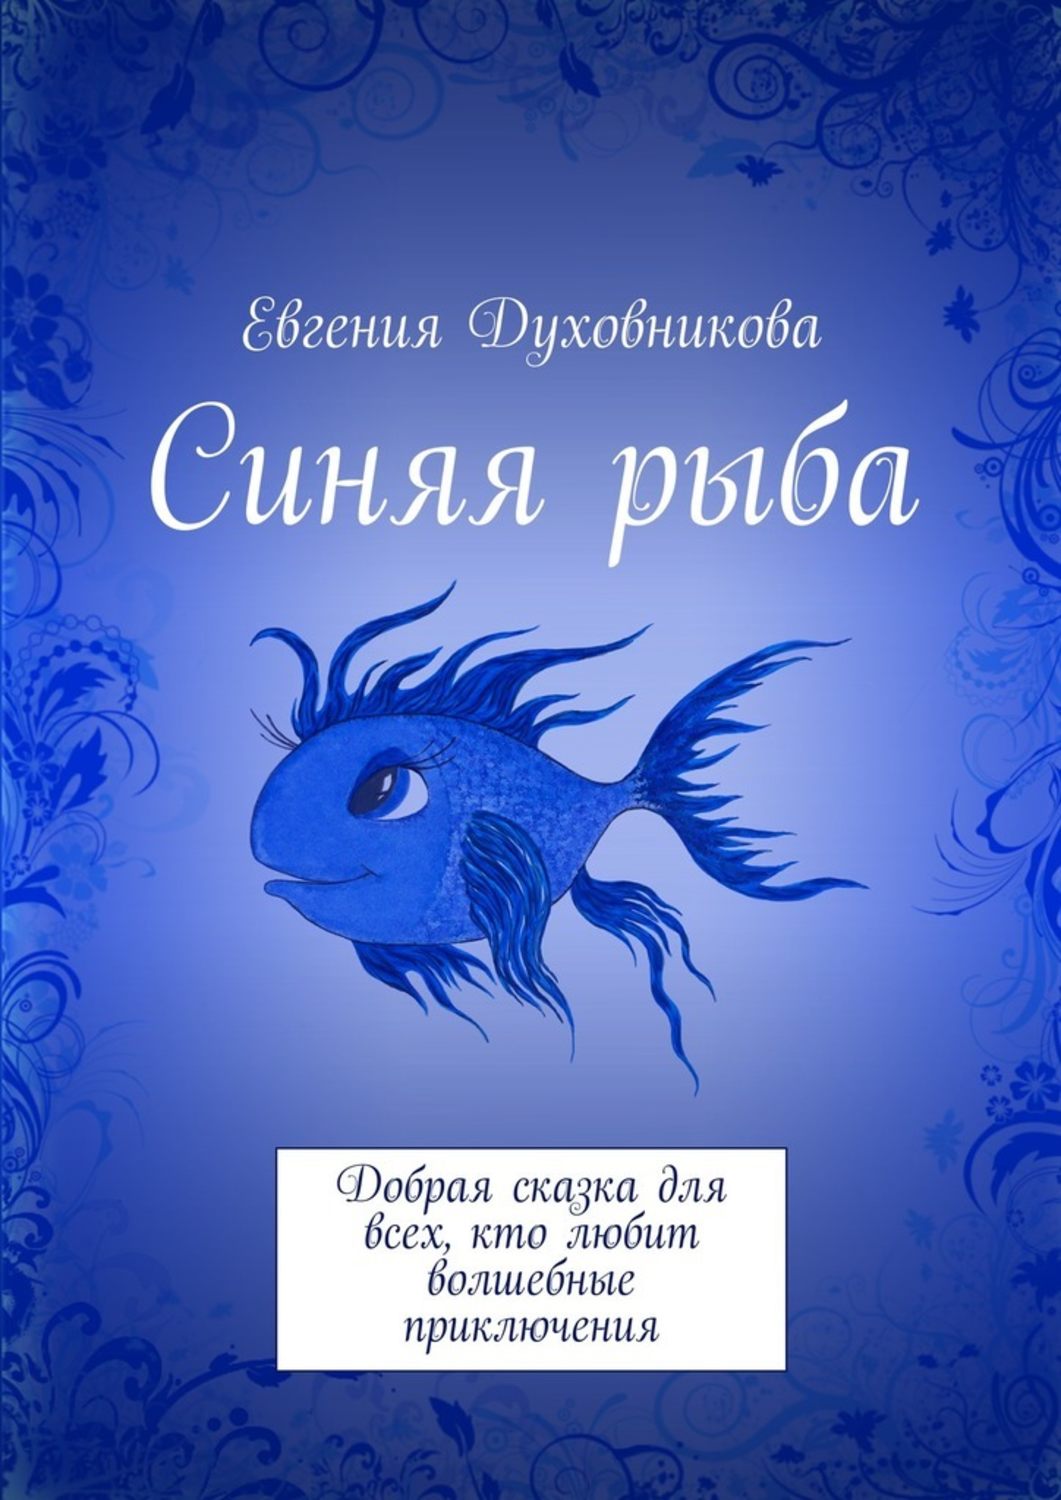 Книги про рыб. Книга с голубой обложкой. Художественные книги про рыб для детей. Книжки малышам про рыб. Обложка книги синяя.